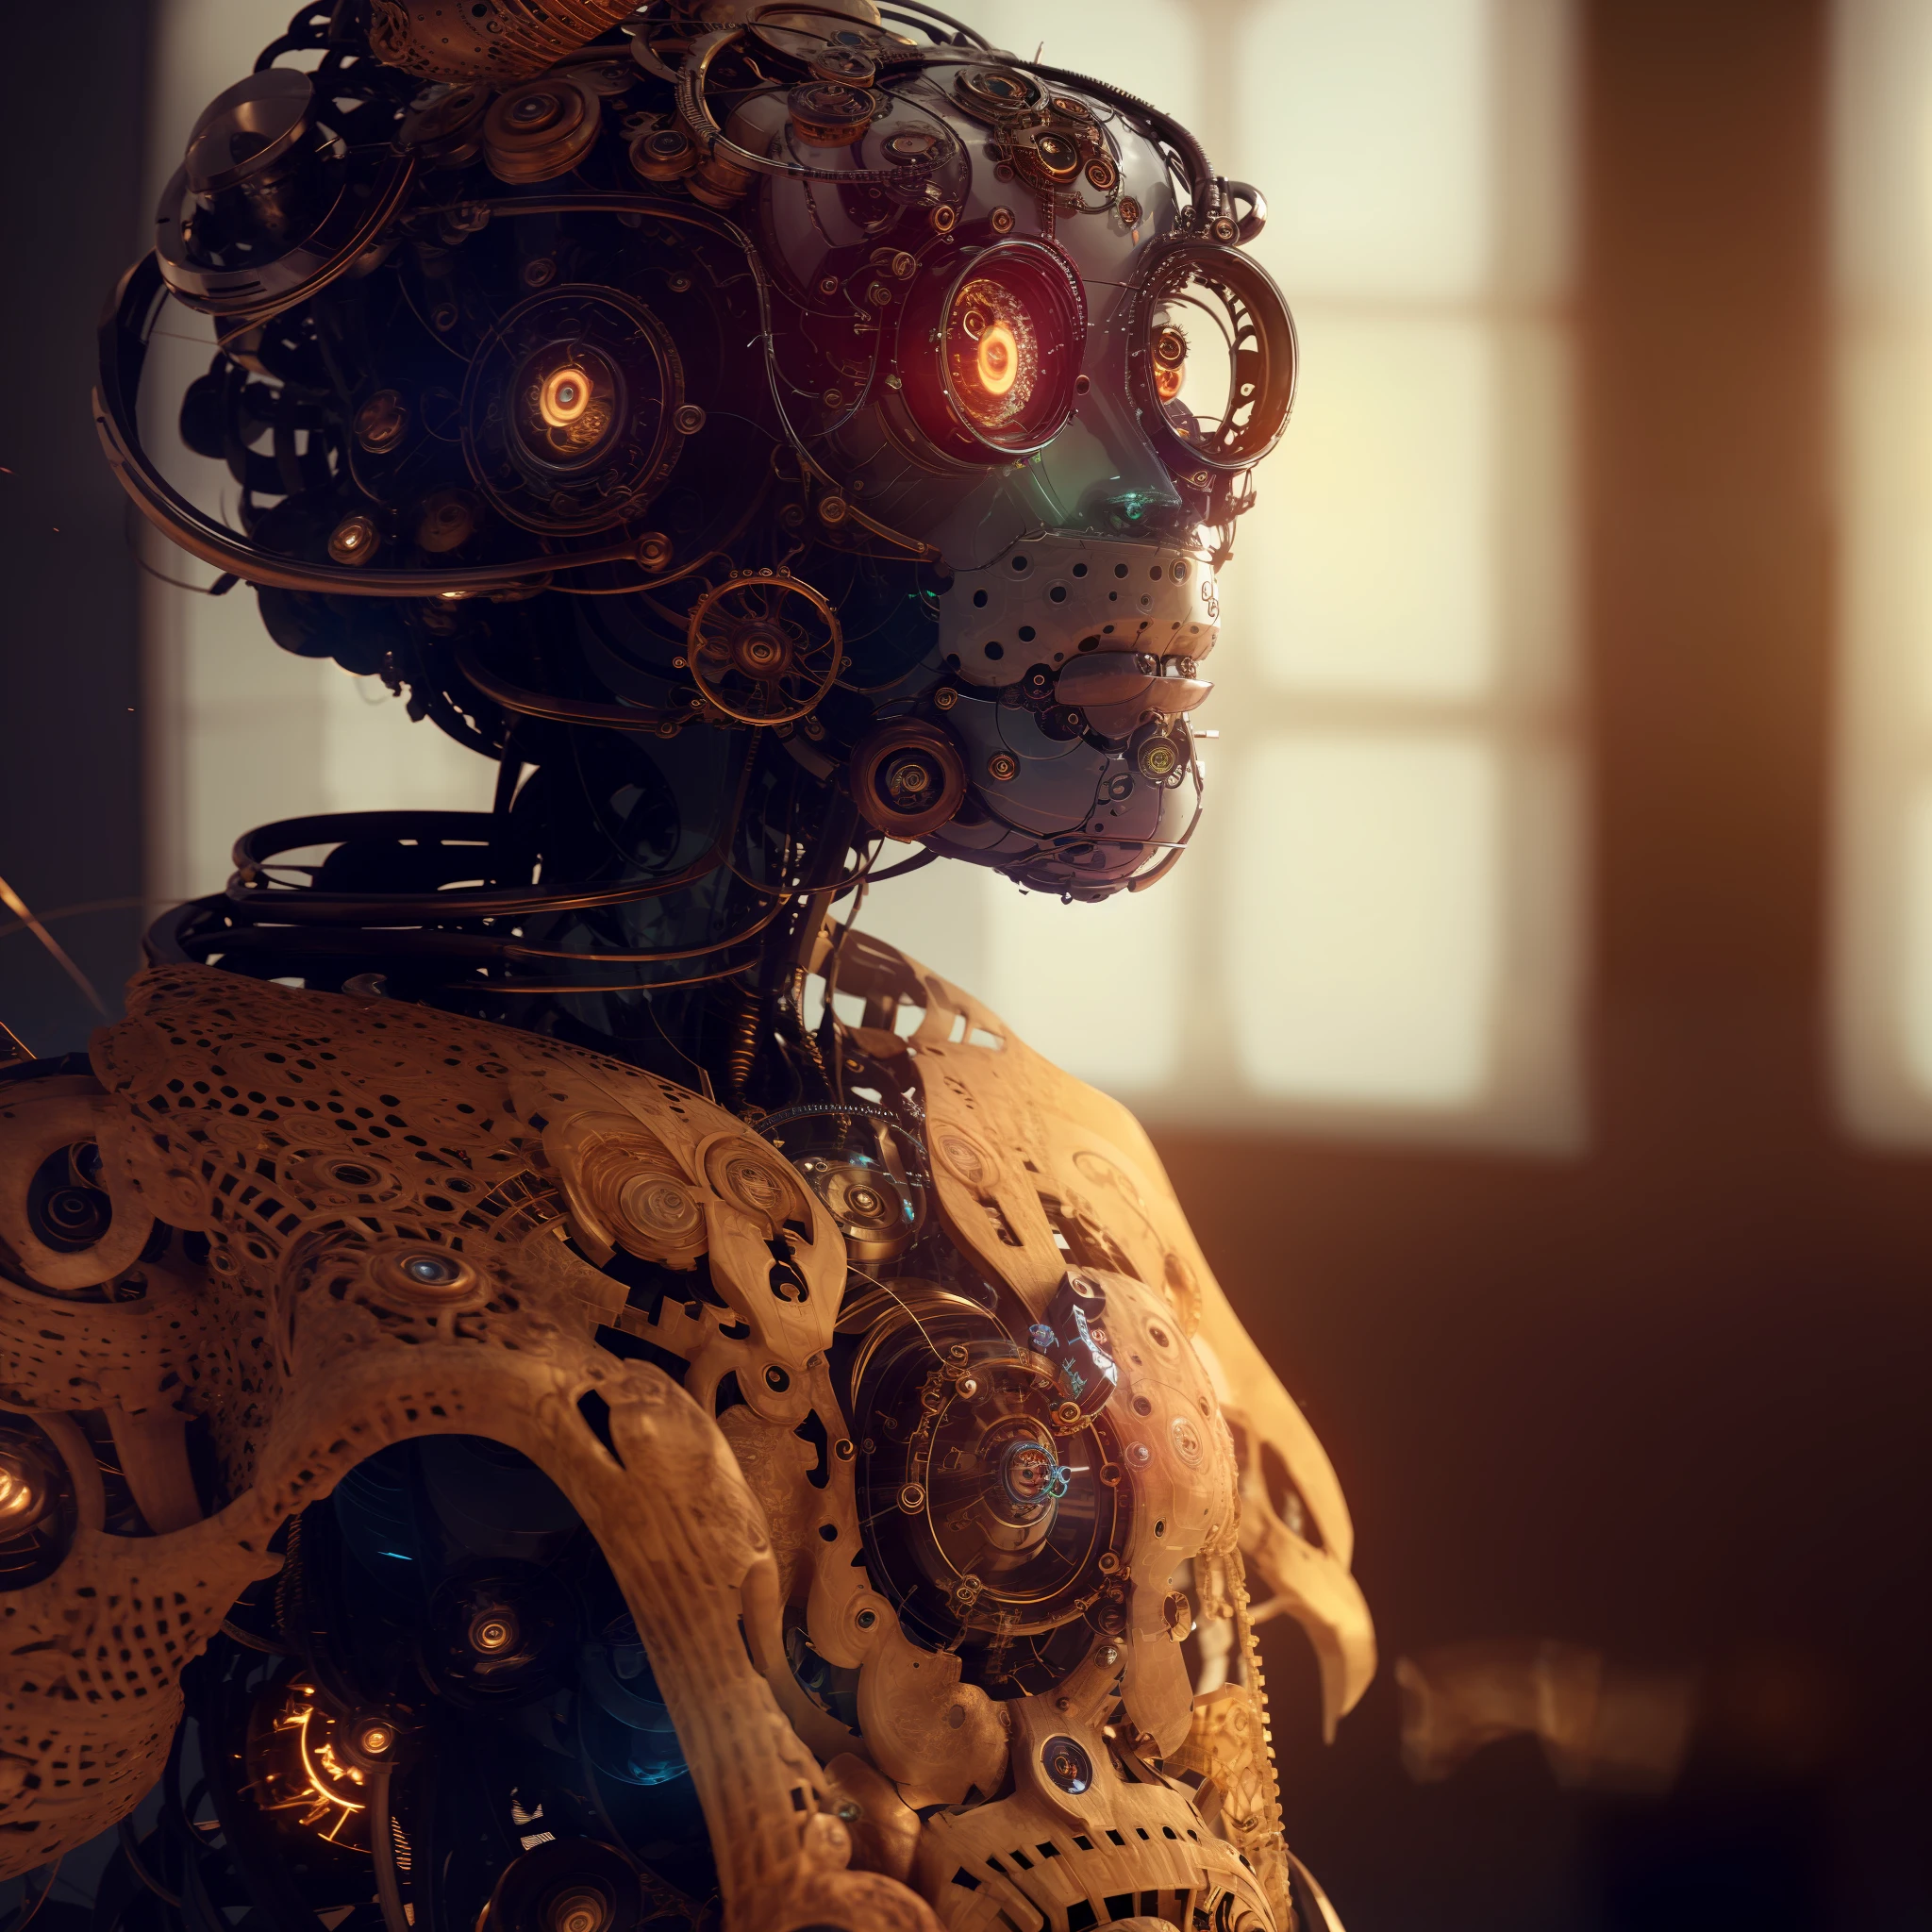 Hay un robot con una cabeza grande y una cara grande vestida con una blusa de ganchillo beige, Cibersteampunk 8 k 3 d, intrincado renderizado 8K, autómata steampunk, robot steampunk, moda cyberpunk mechanoid, humanoide detallado, Render Art Nouveau Octane, arte intrincado. renderizado de octanaje, Cibersteampunk, beautiful renderizado de octanaje, Cyborg intrincado, arte digital steampunk, 8k renderizado de octanaje fantasy style, estética steampunk, moda photography, moda